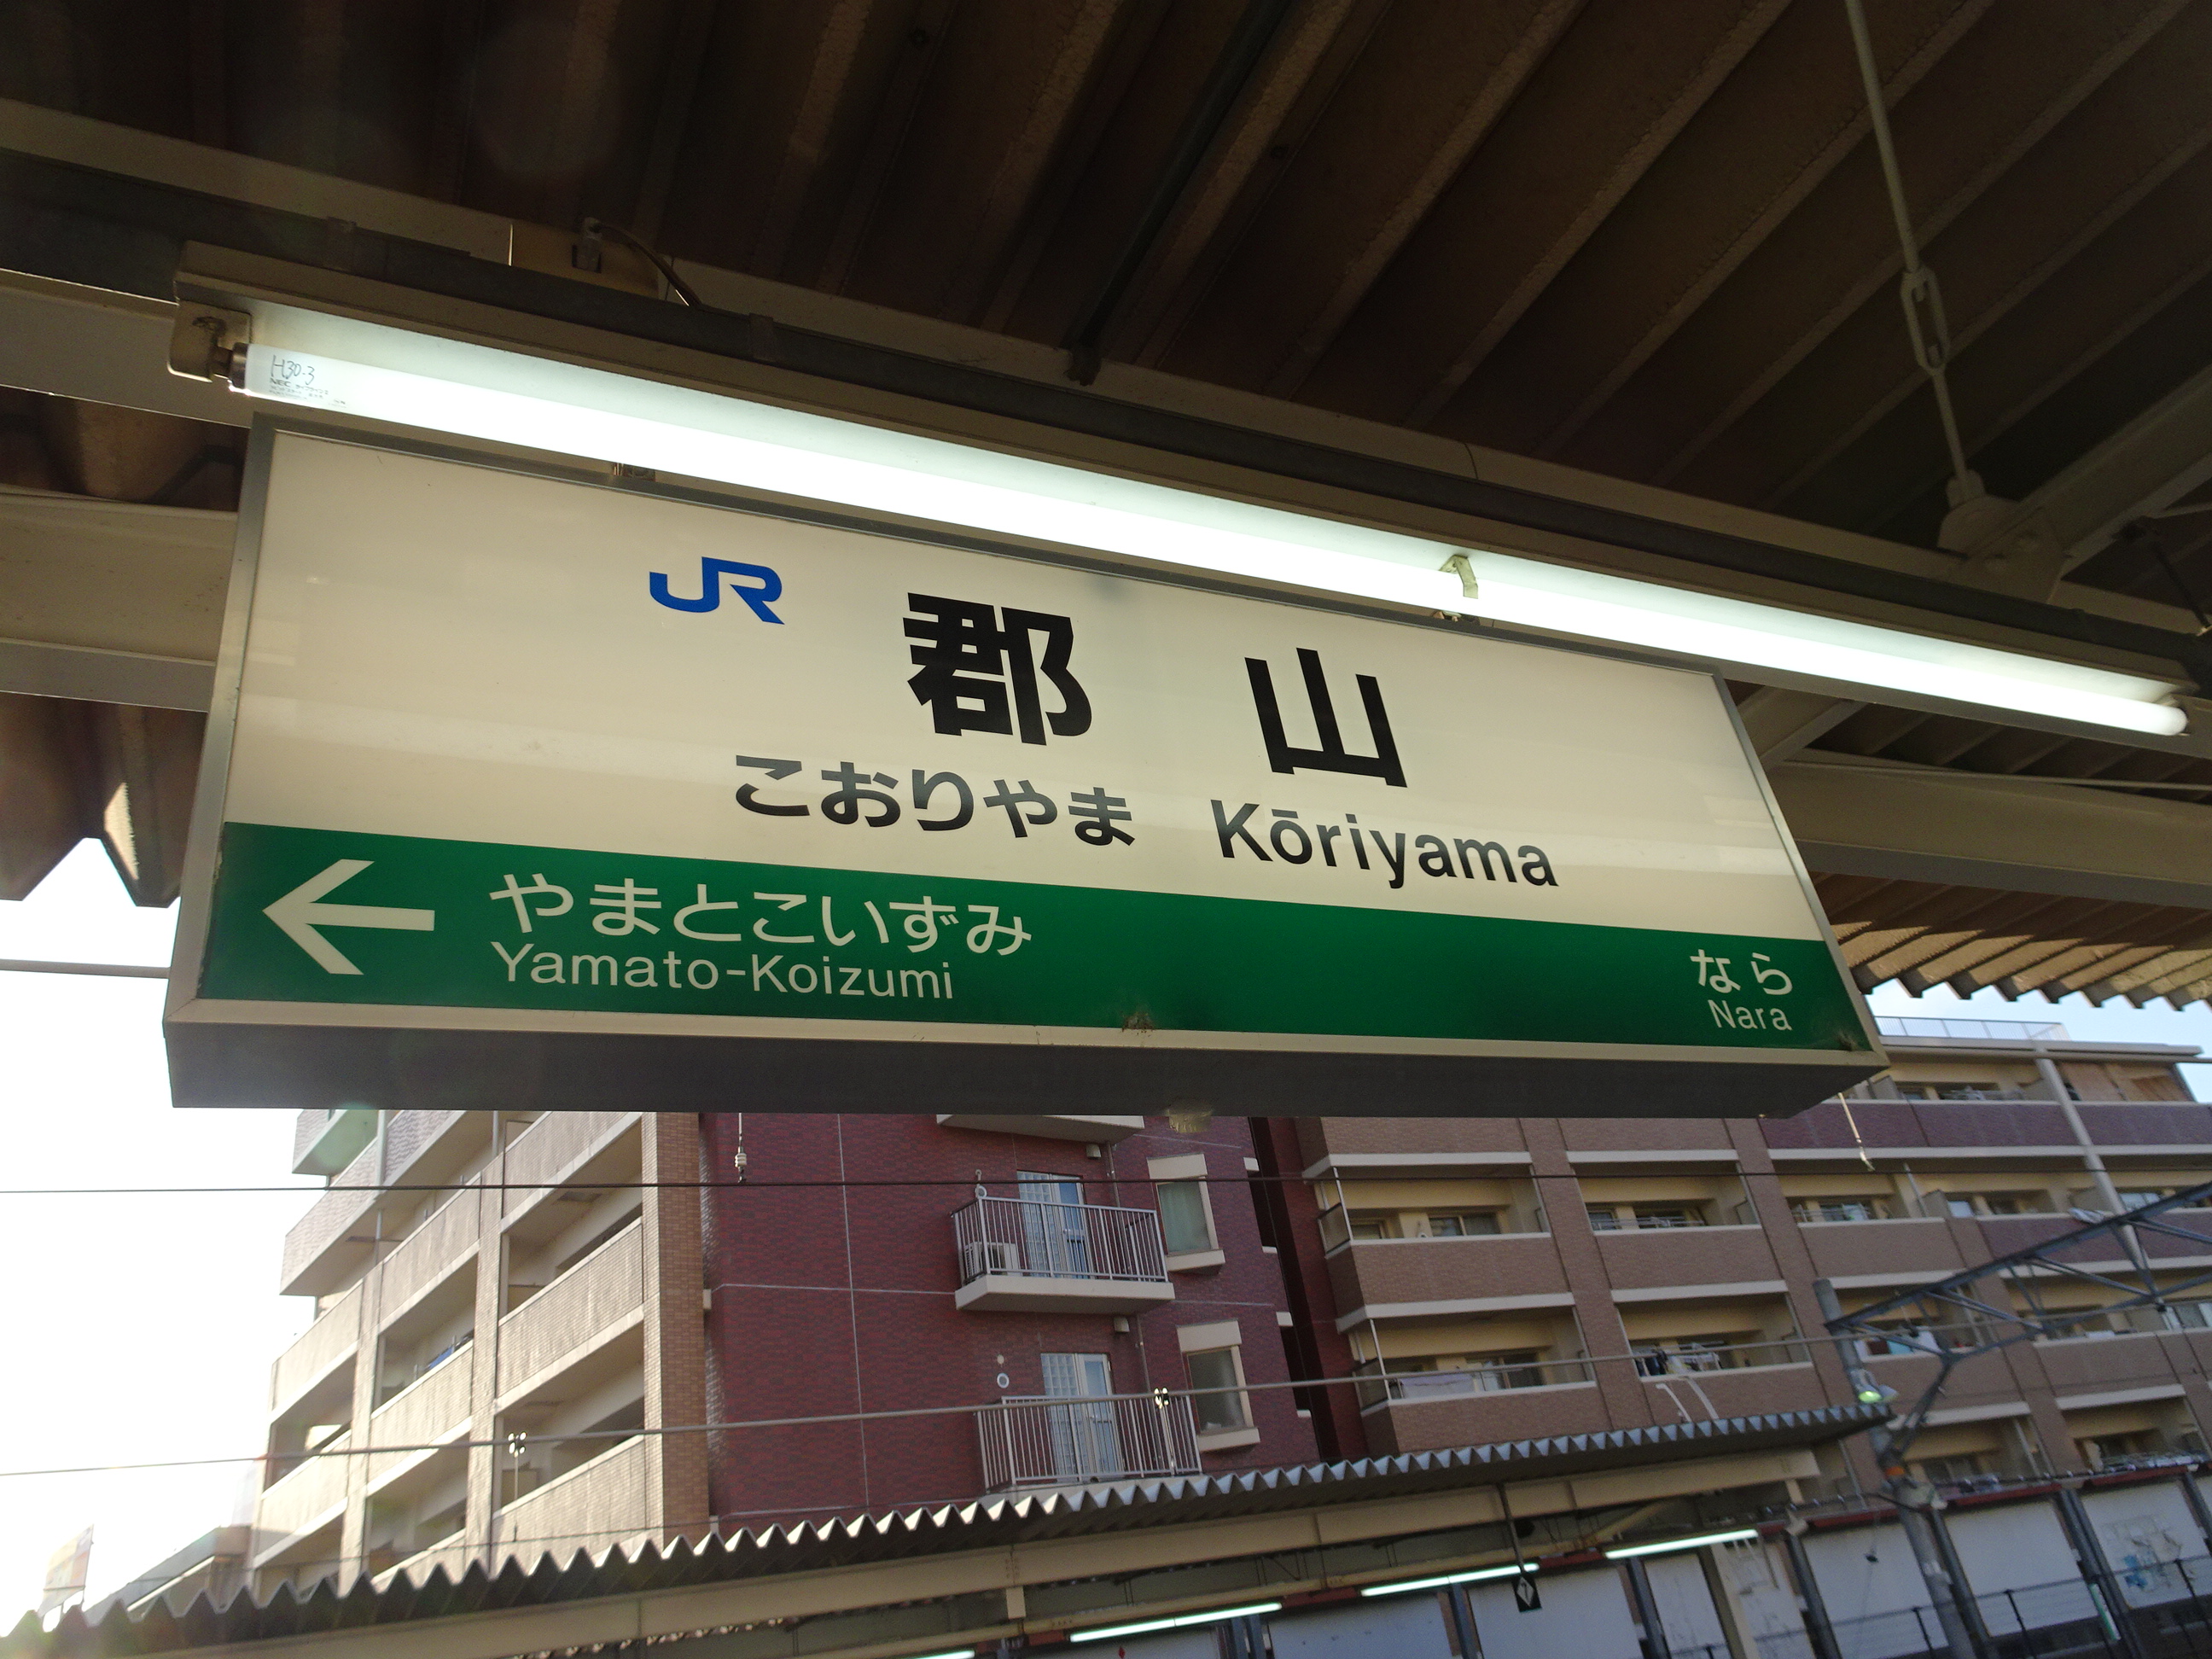 18 4 12 13 古都奈良を歩く その6 完結編 奈良で出会ったおもしろ看板たち けれど空は青 日本全国鉄道旅行記ブログ